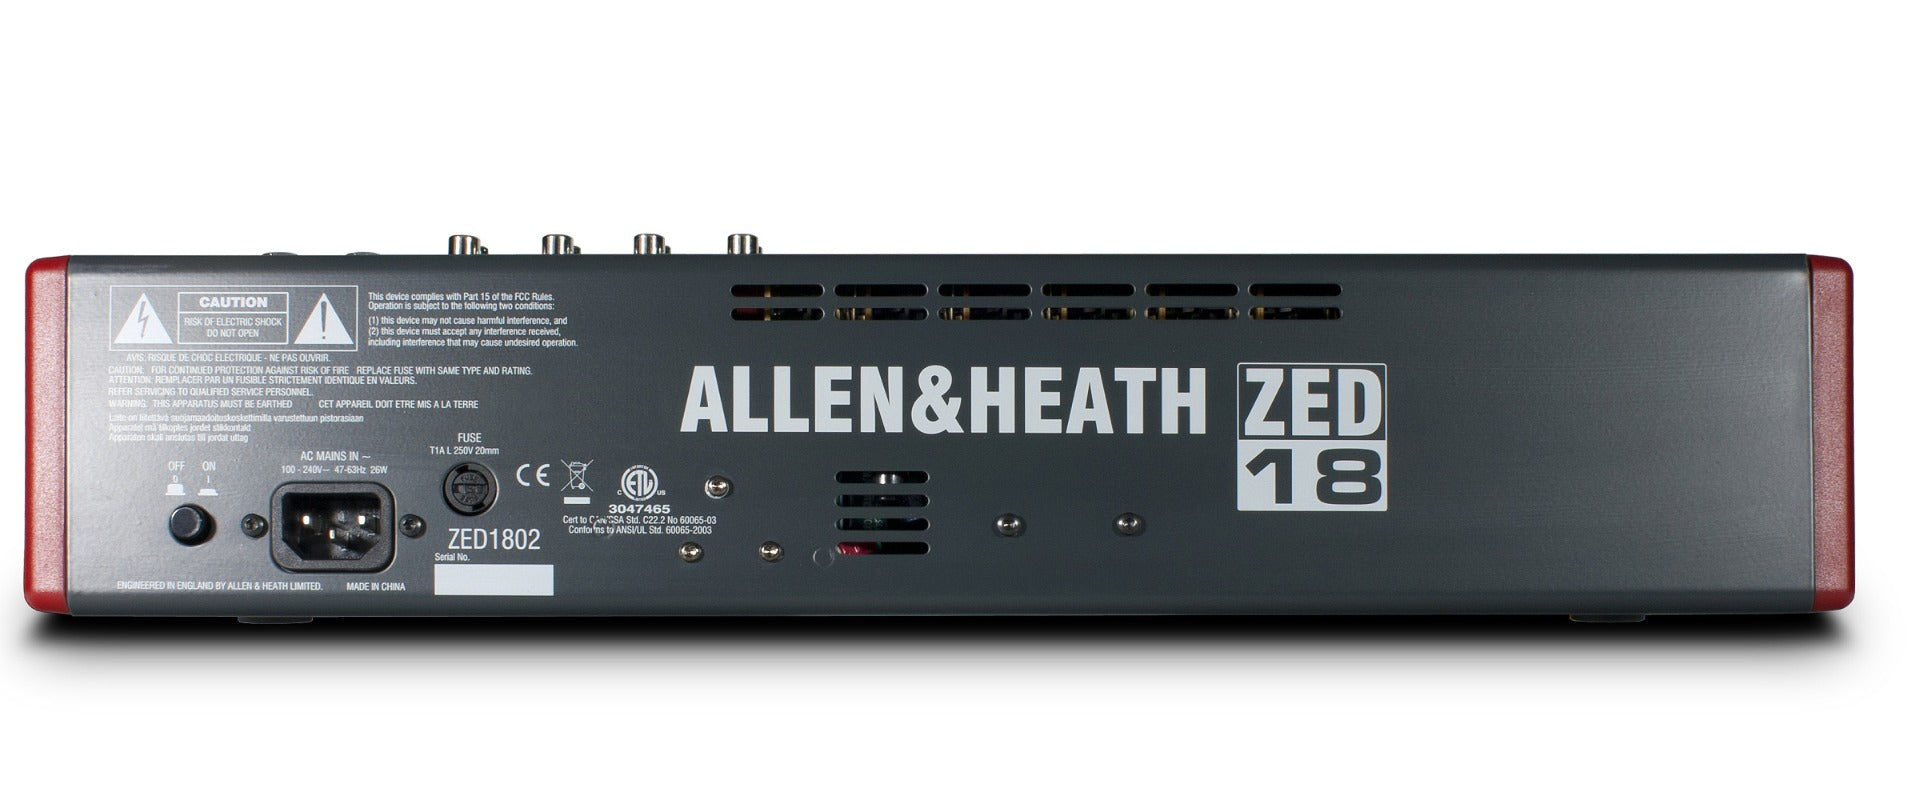 Allen & Heath ZED-18 Live and Studio Mixer